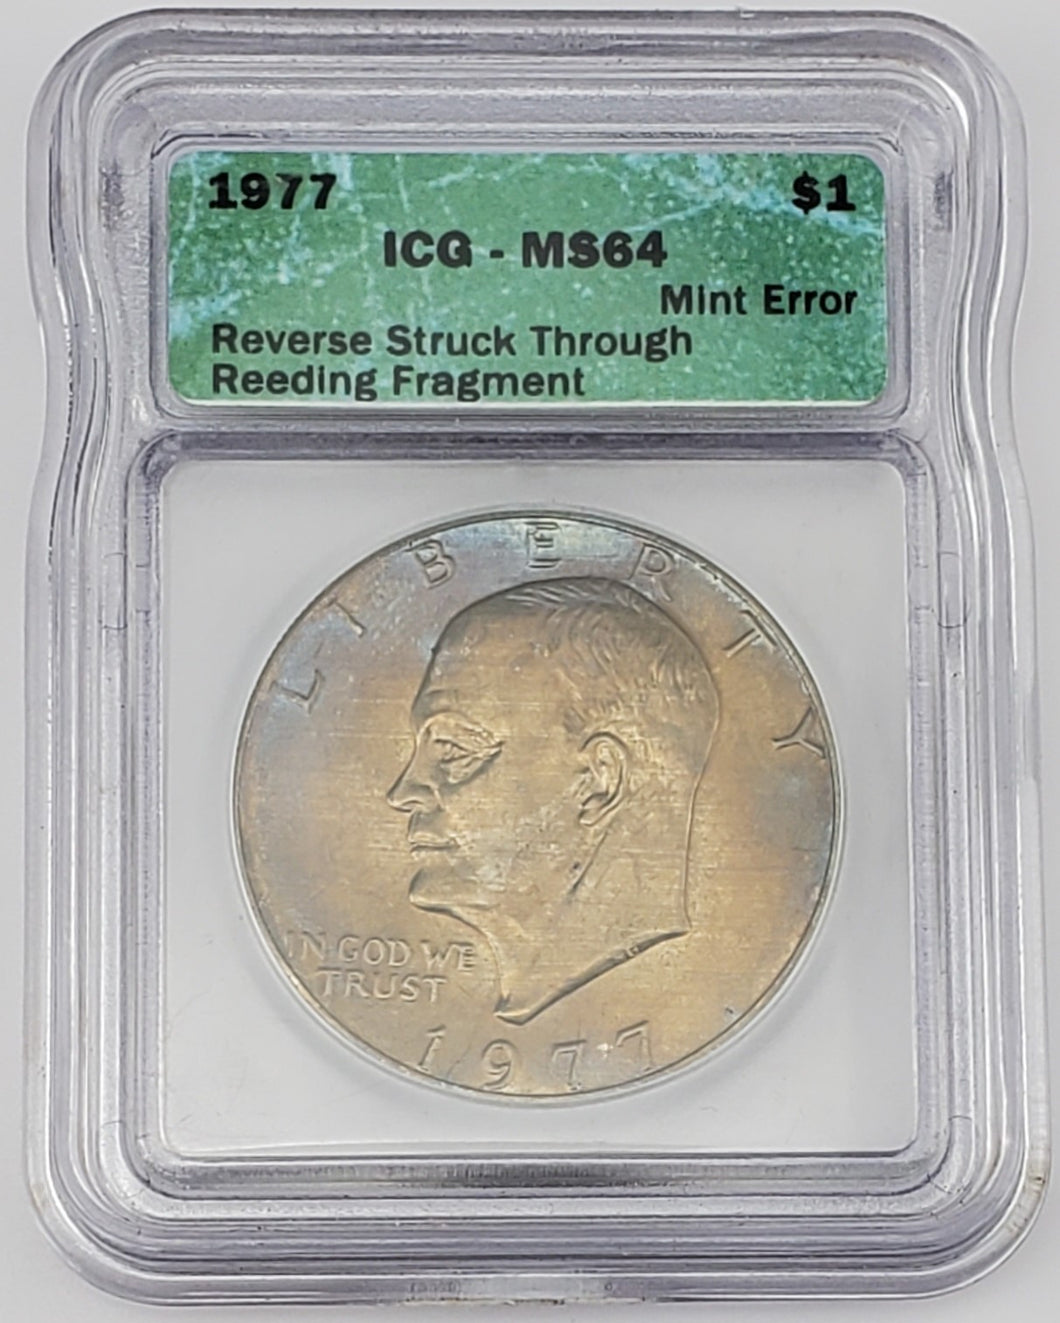 1977 Eisenhower Dollar Reverse Struck Thru Reeding Fragment Mint Error ICG MS 64